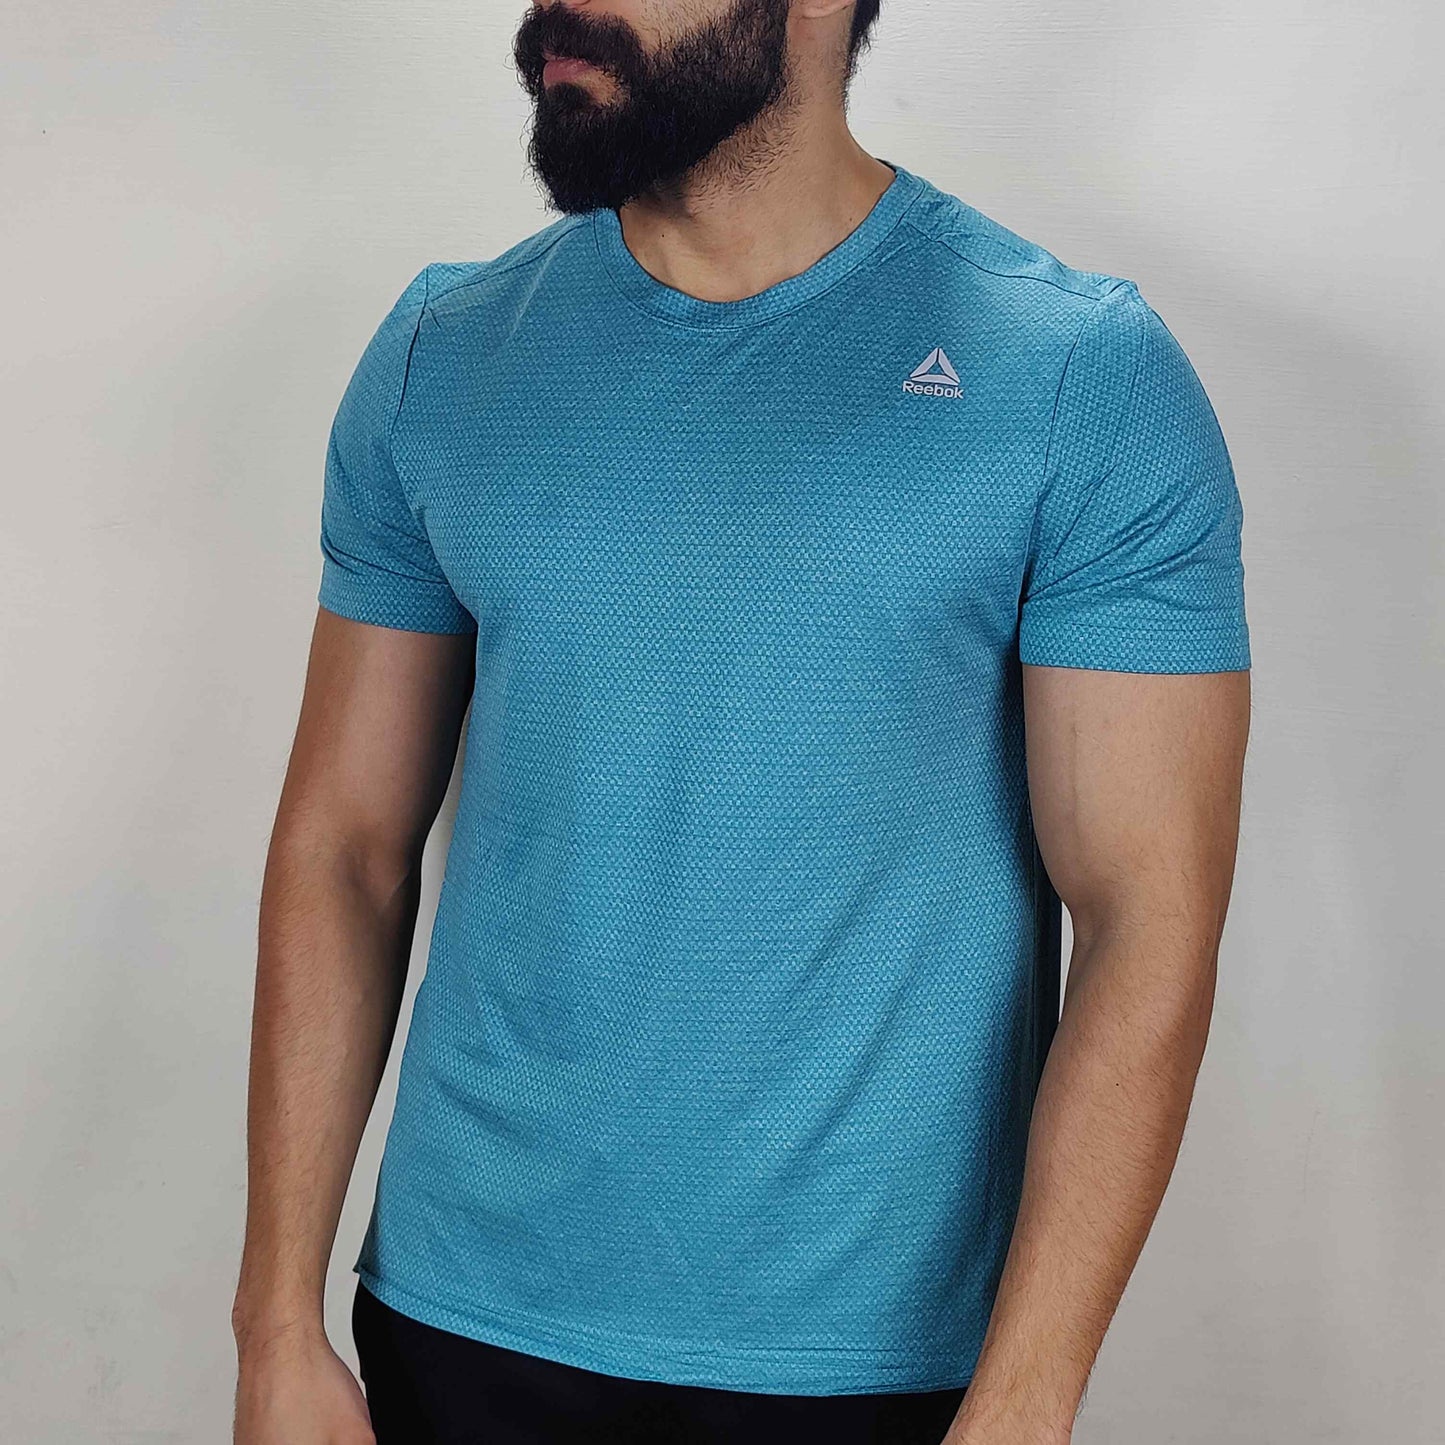 Nike Training Shirt - Blue - TS1033